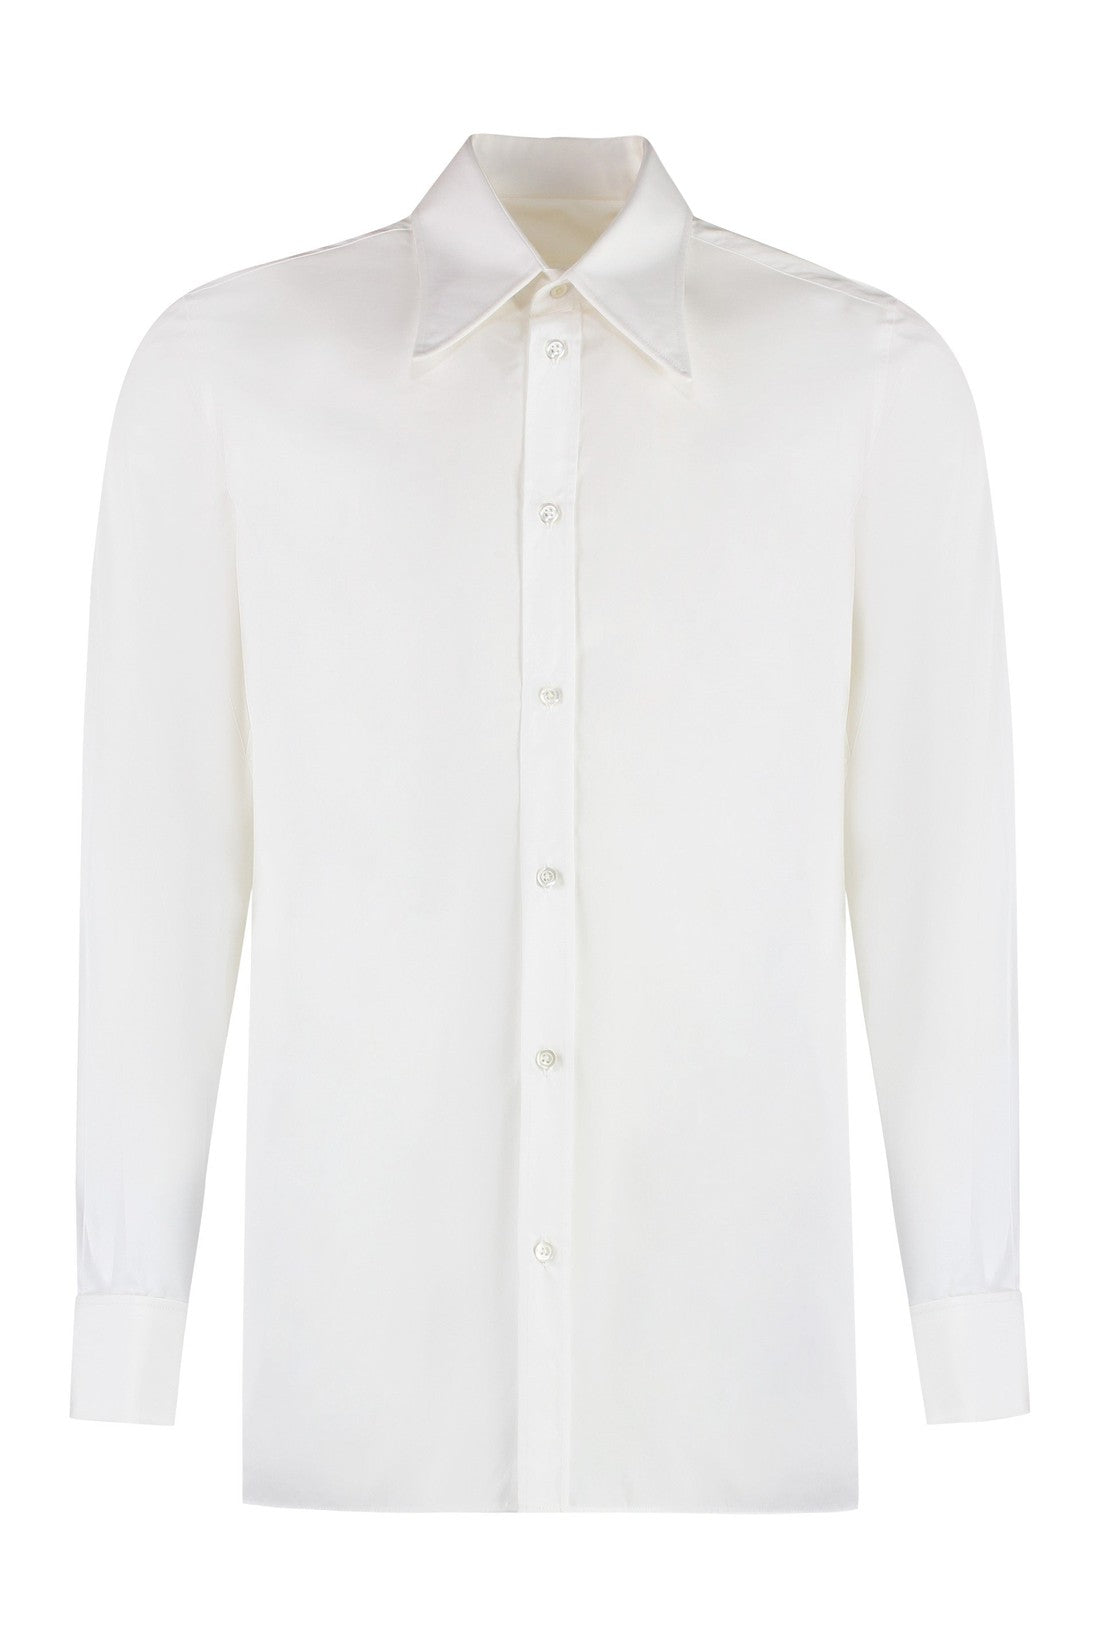 Maison Margiela-OUTLET-SALE-Cotton shirt-ARCHIVIST